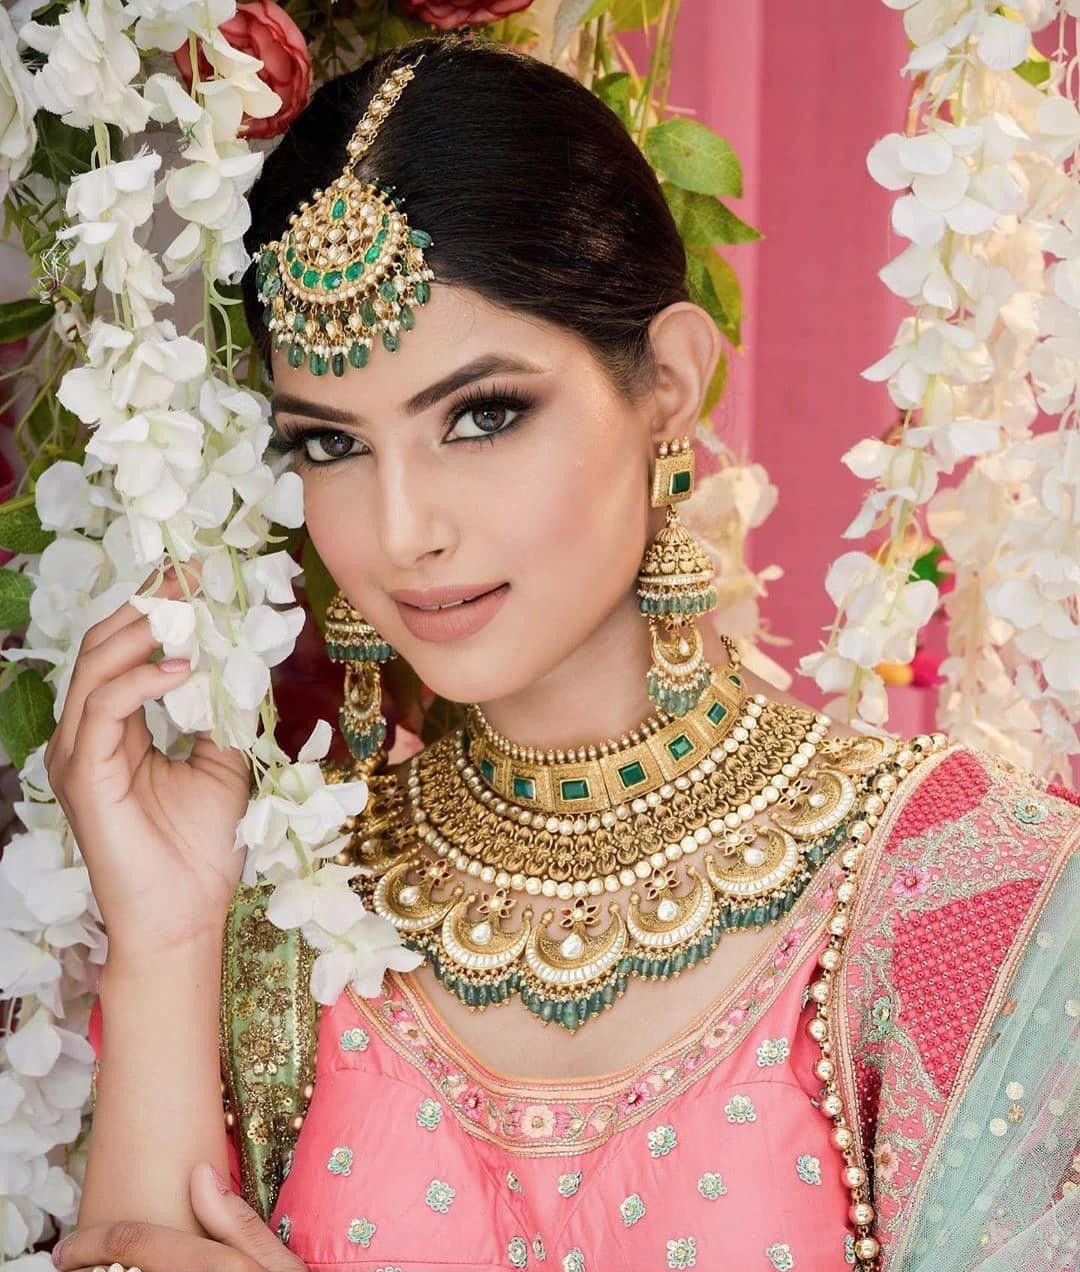 Nhan sắc ngọt ngào của Hoa hậu Hoàn vũ Ấn Độ 2021 làm tan chảy mọi ánh nhìn